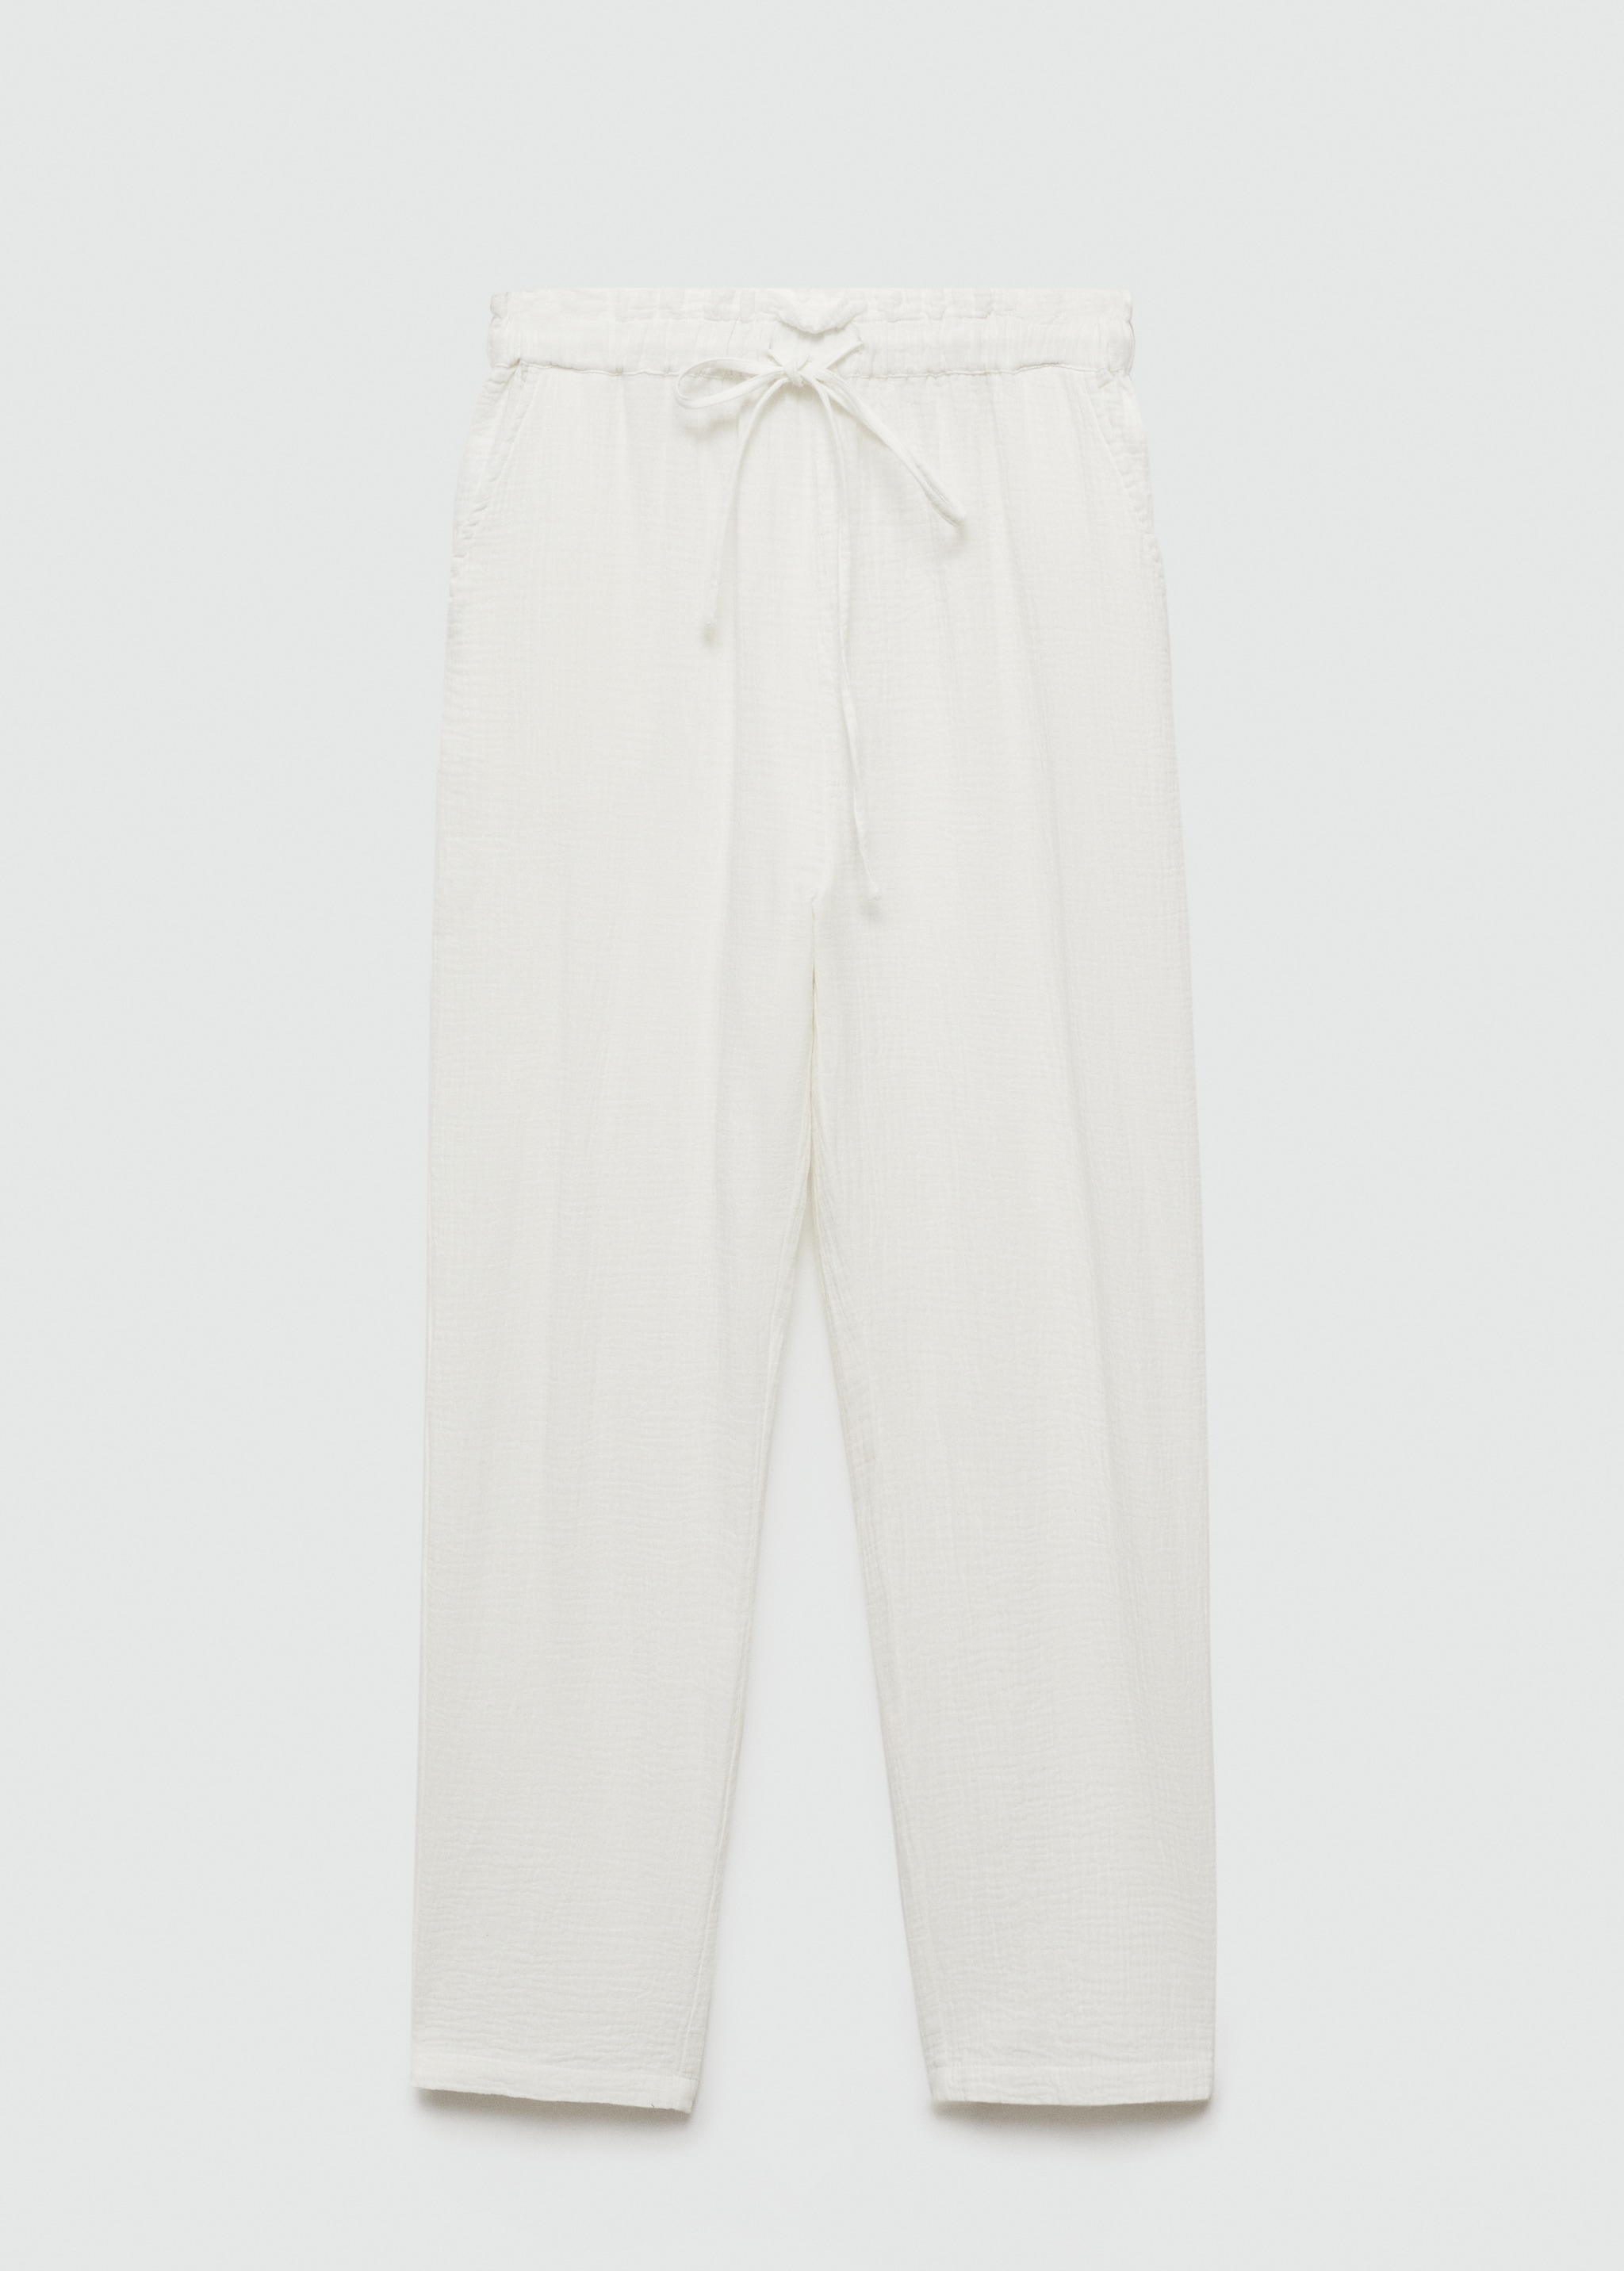 Pantalón algodón cintura elástica - Artículo sin modelo